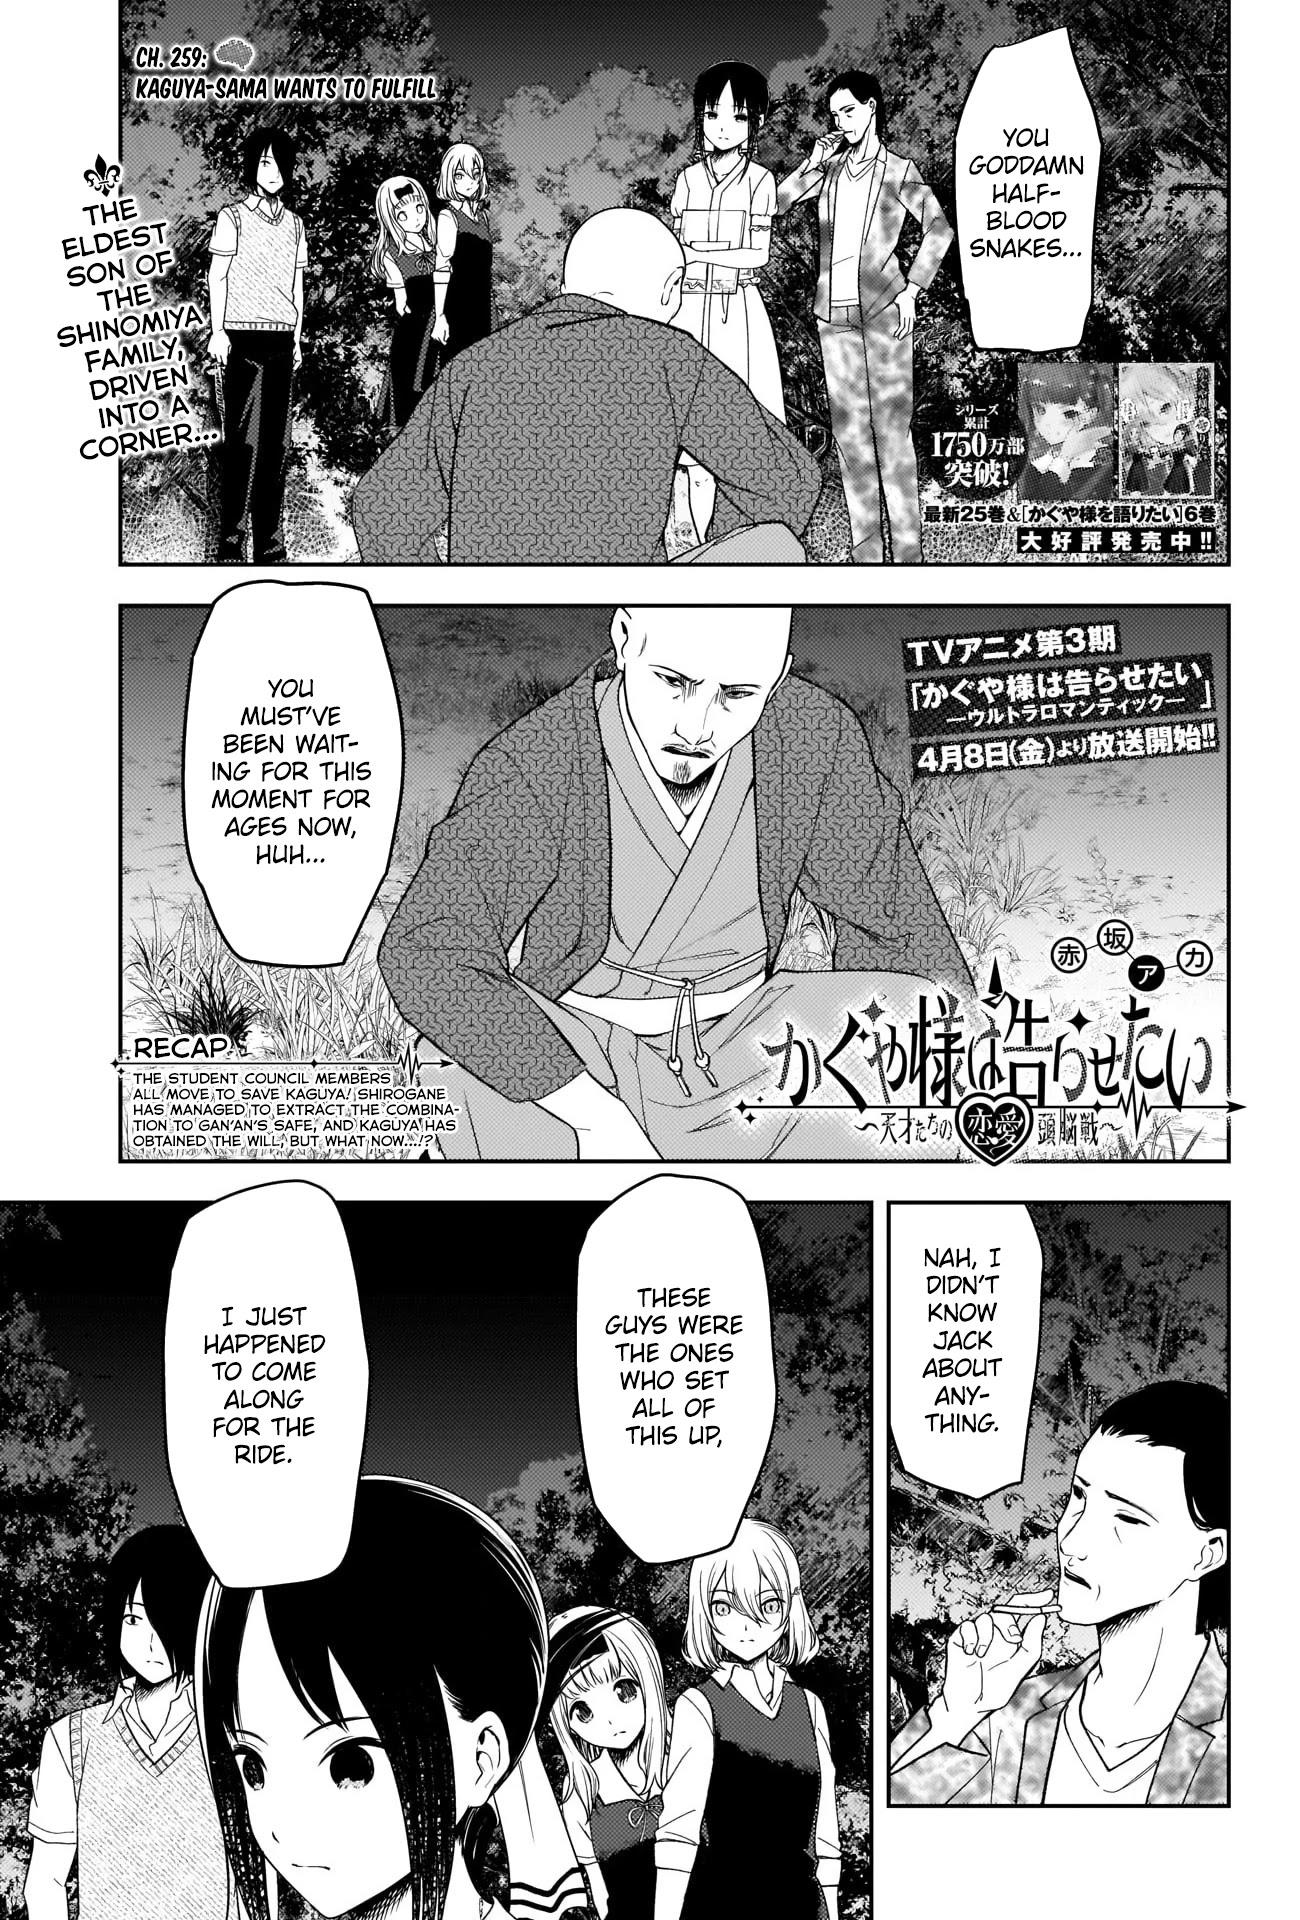 Read Kaguya-Sama Wa Kokurasetai - Tensai-Tachi No Renai Zunousen Chapter  237 on Mangakakalot